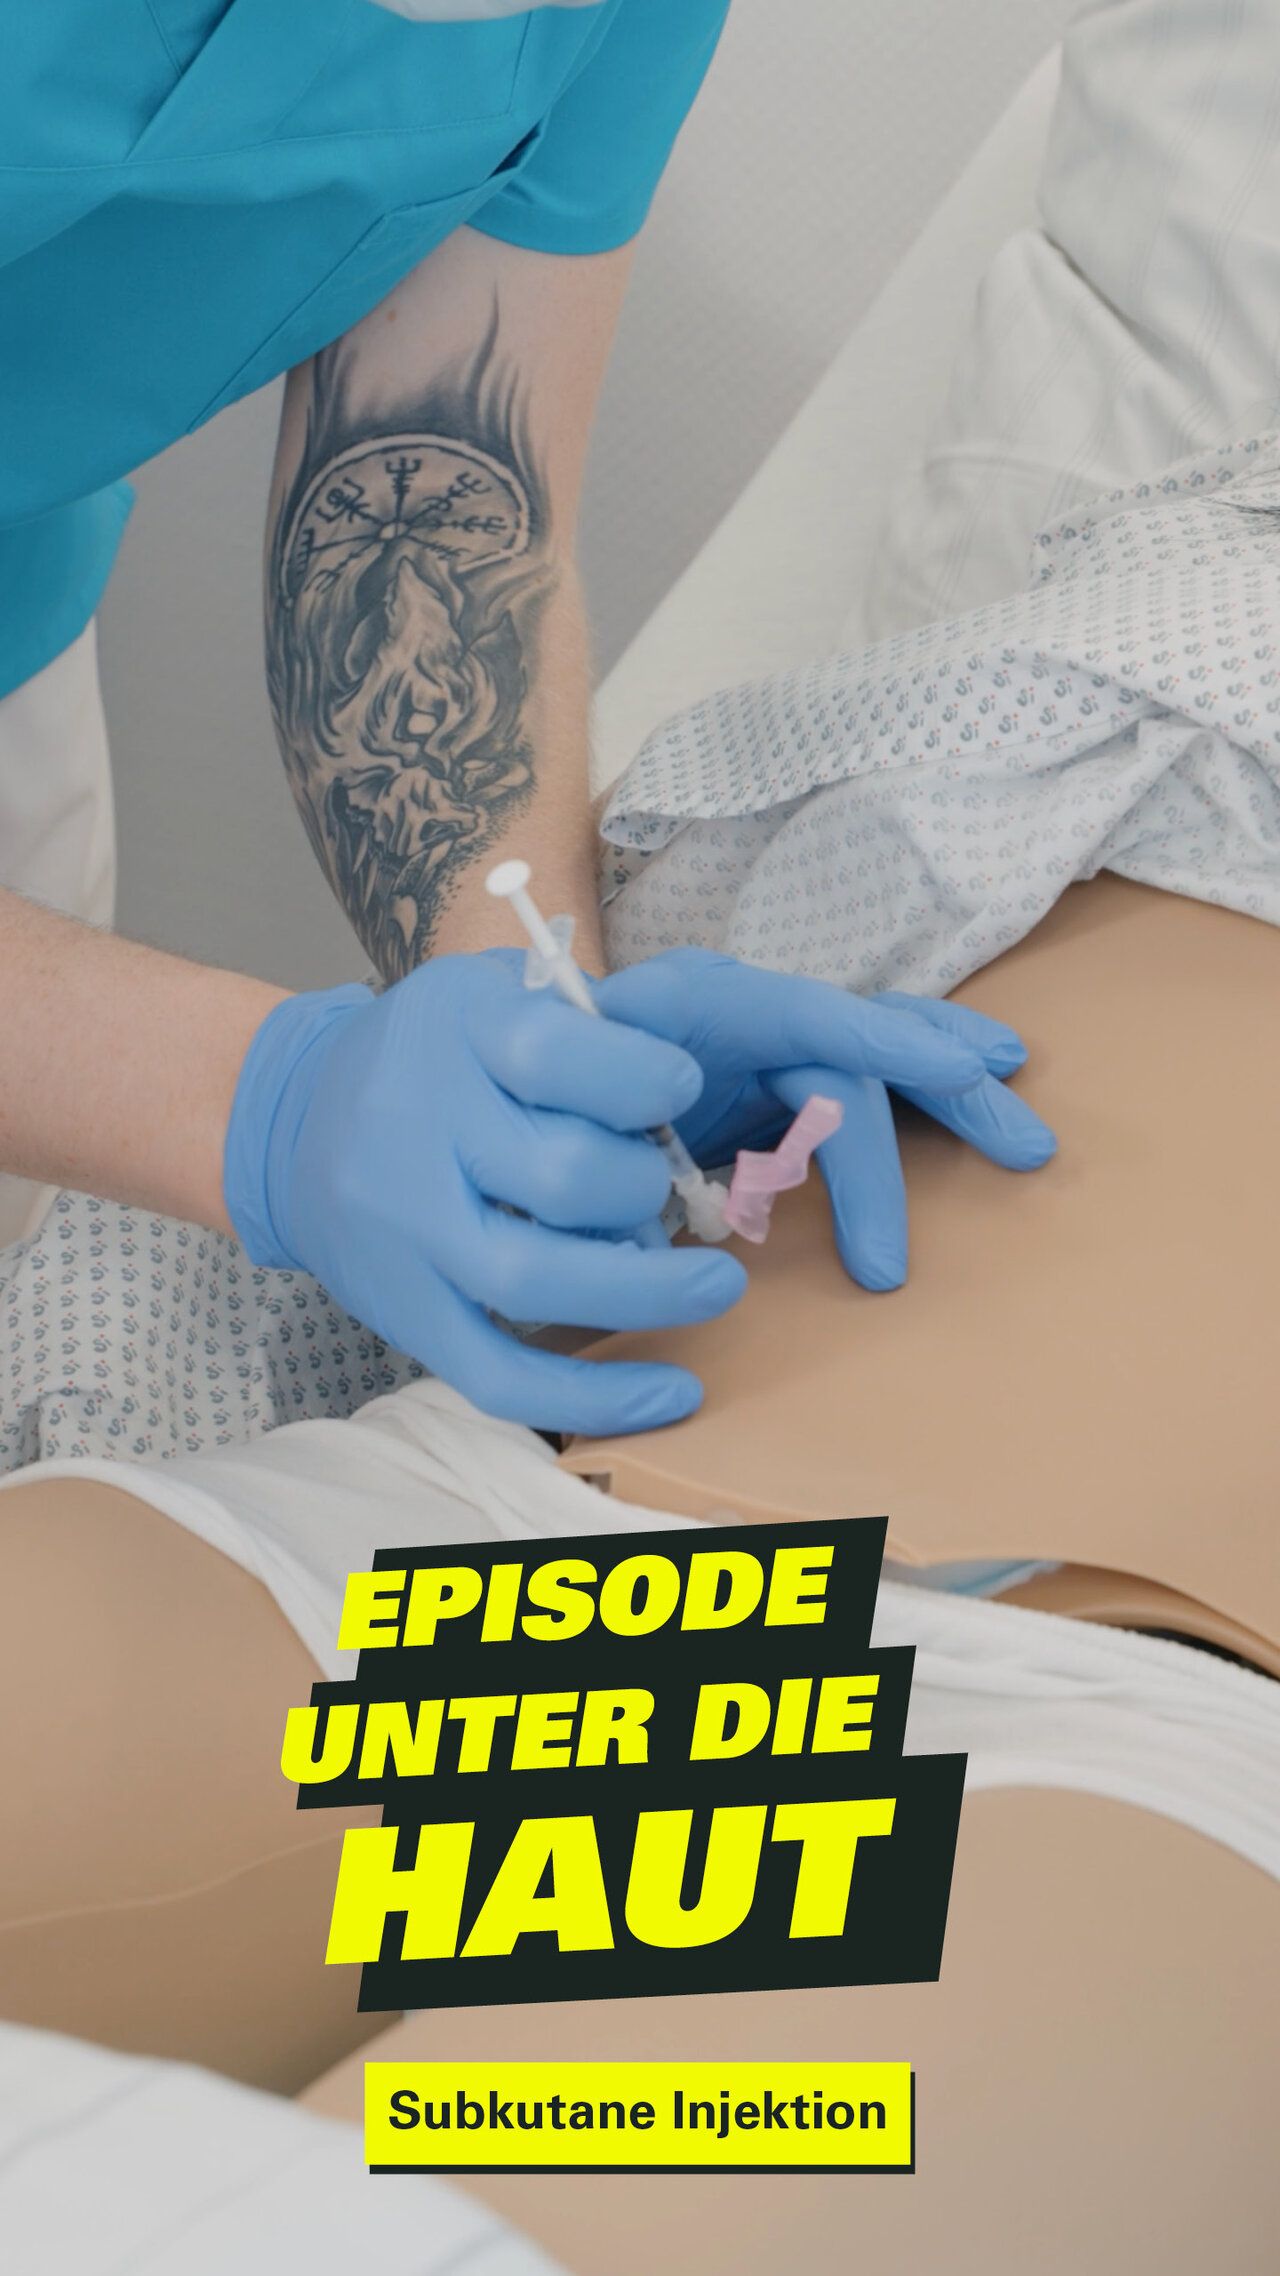 Eine Pflegekraft setzt eine Injektion in den Bauch eines Patienten. Dazu der Text: Episode unter die Haut.